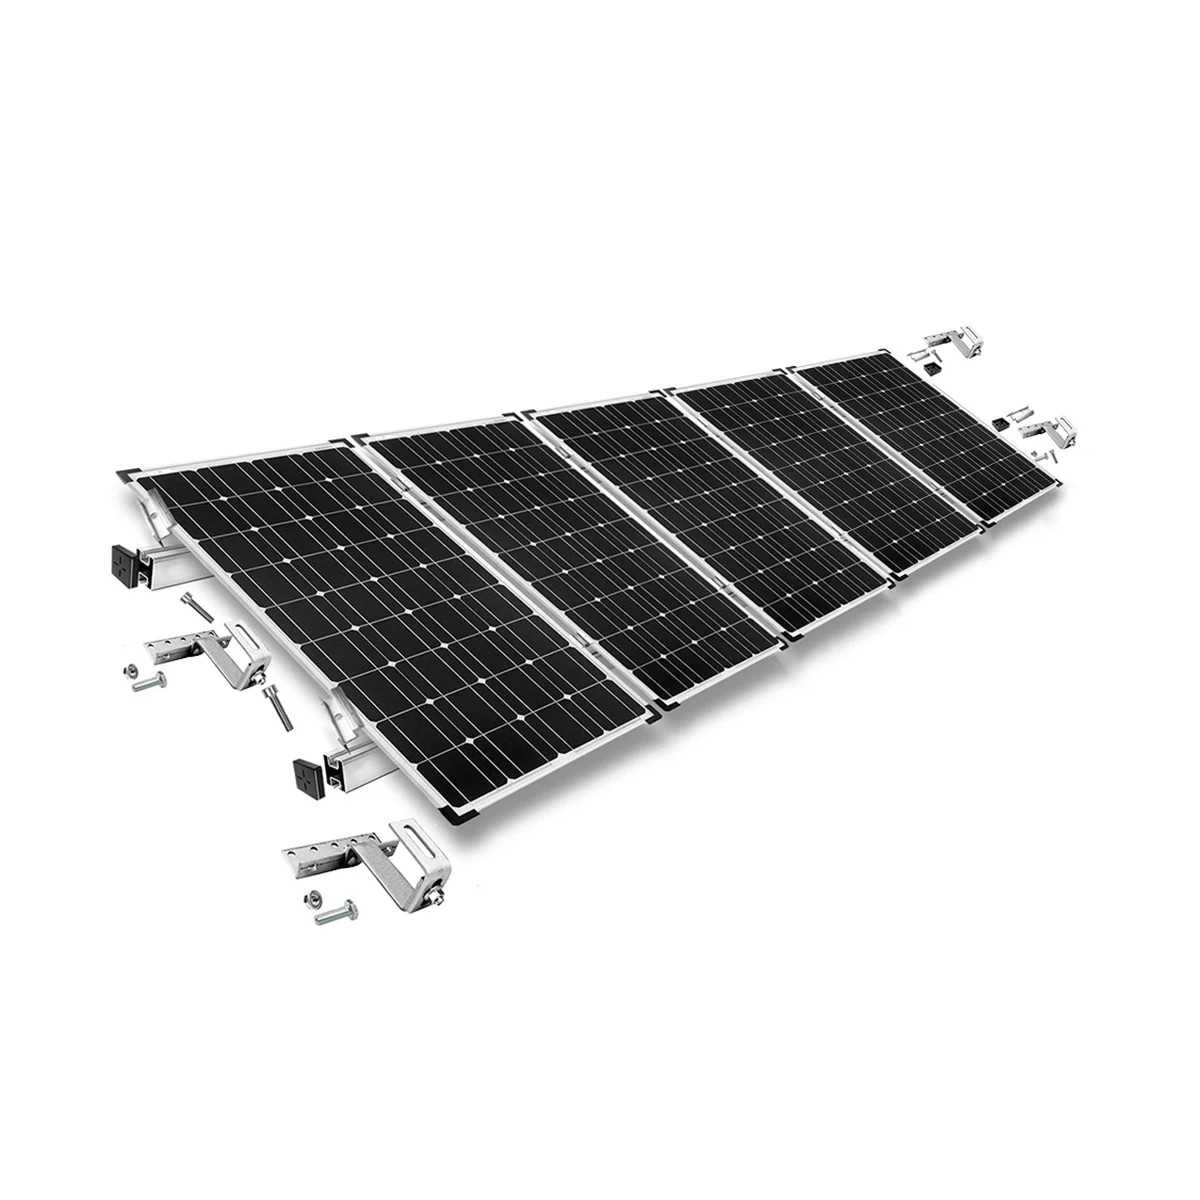 Kit di montaggio h35 regolabile con staffe per tetto (per tegole) per tetto inclinato 5 pannelli solari frame 35 mm